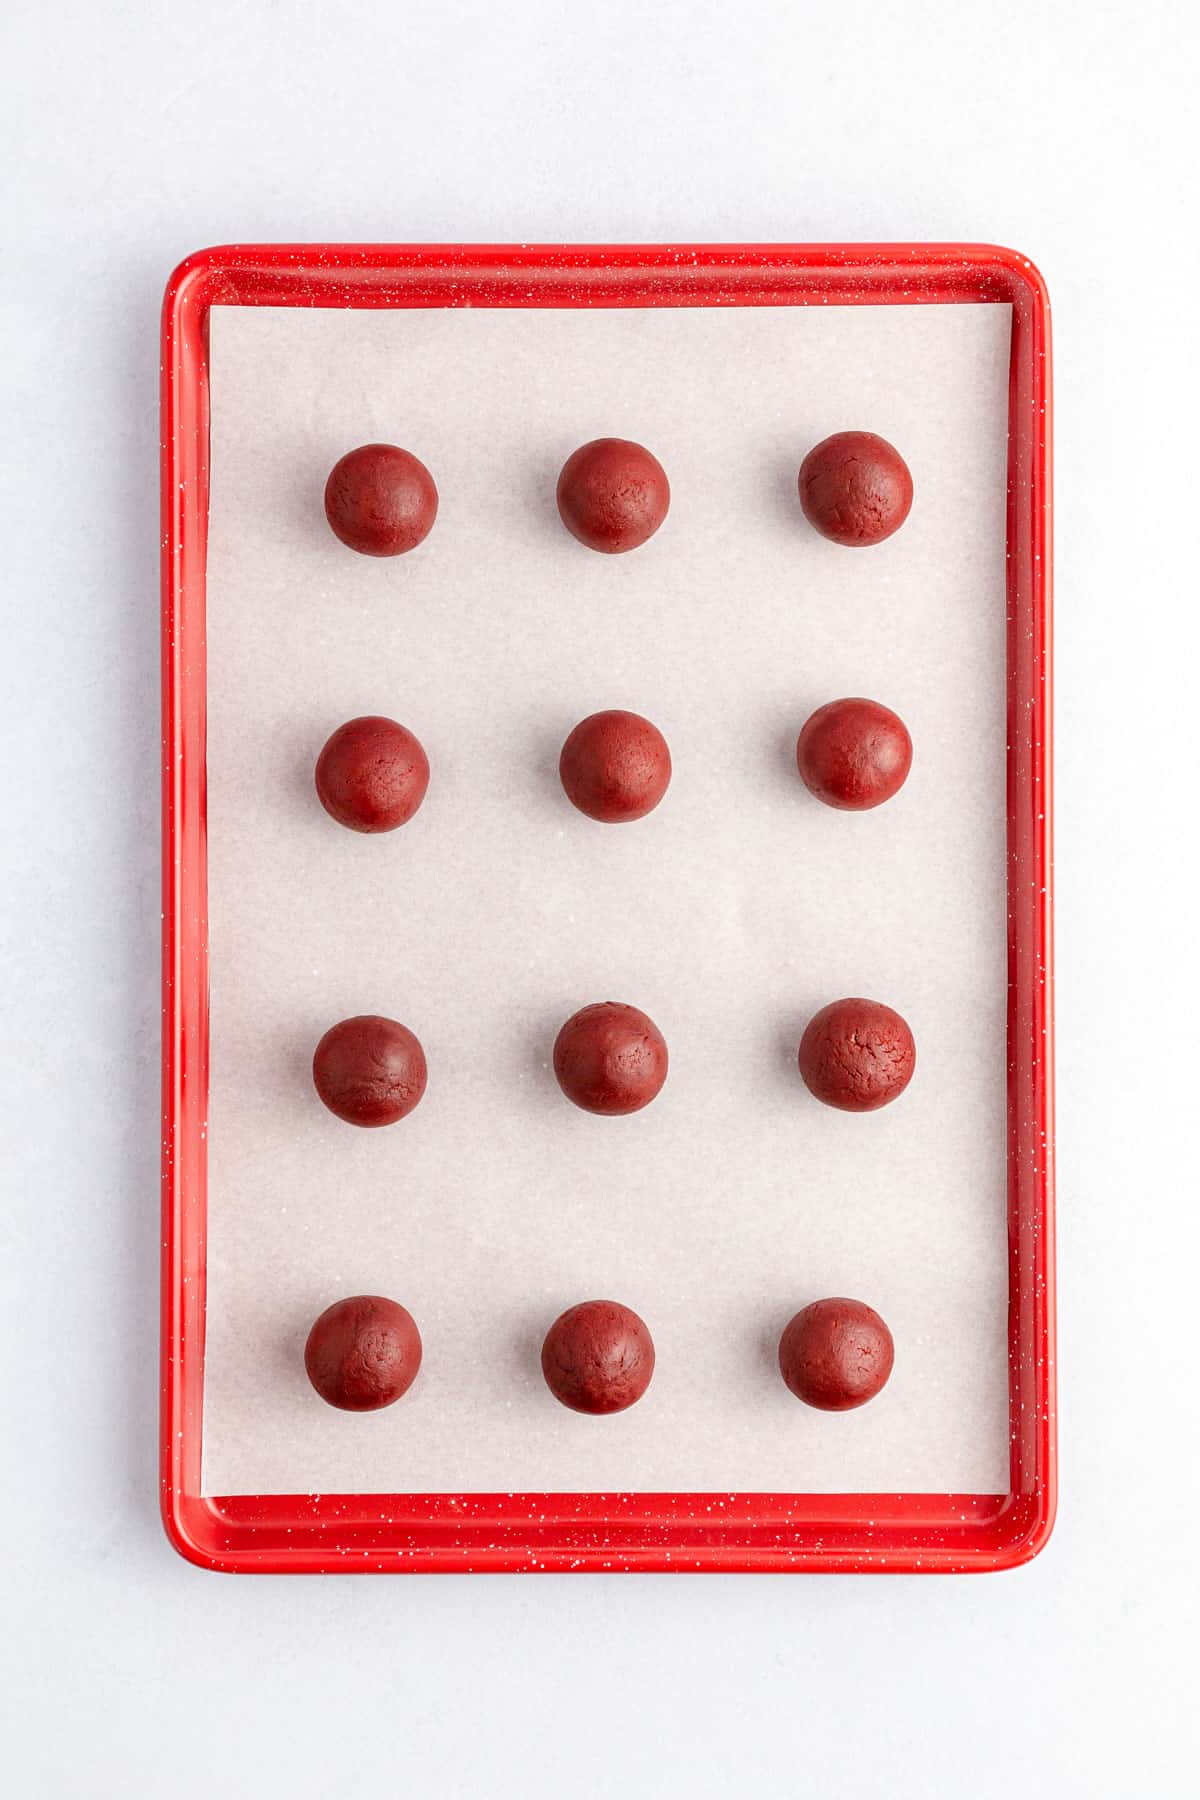 Red velvet cake dough balls on a baking tray.